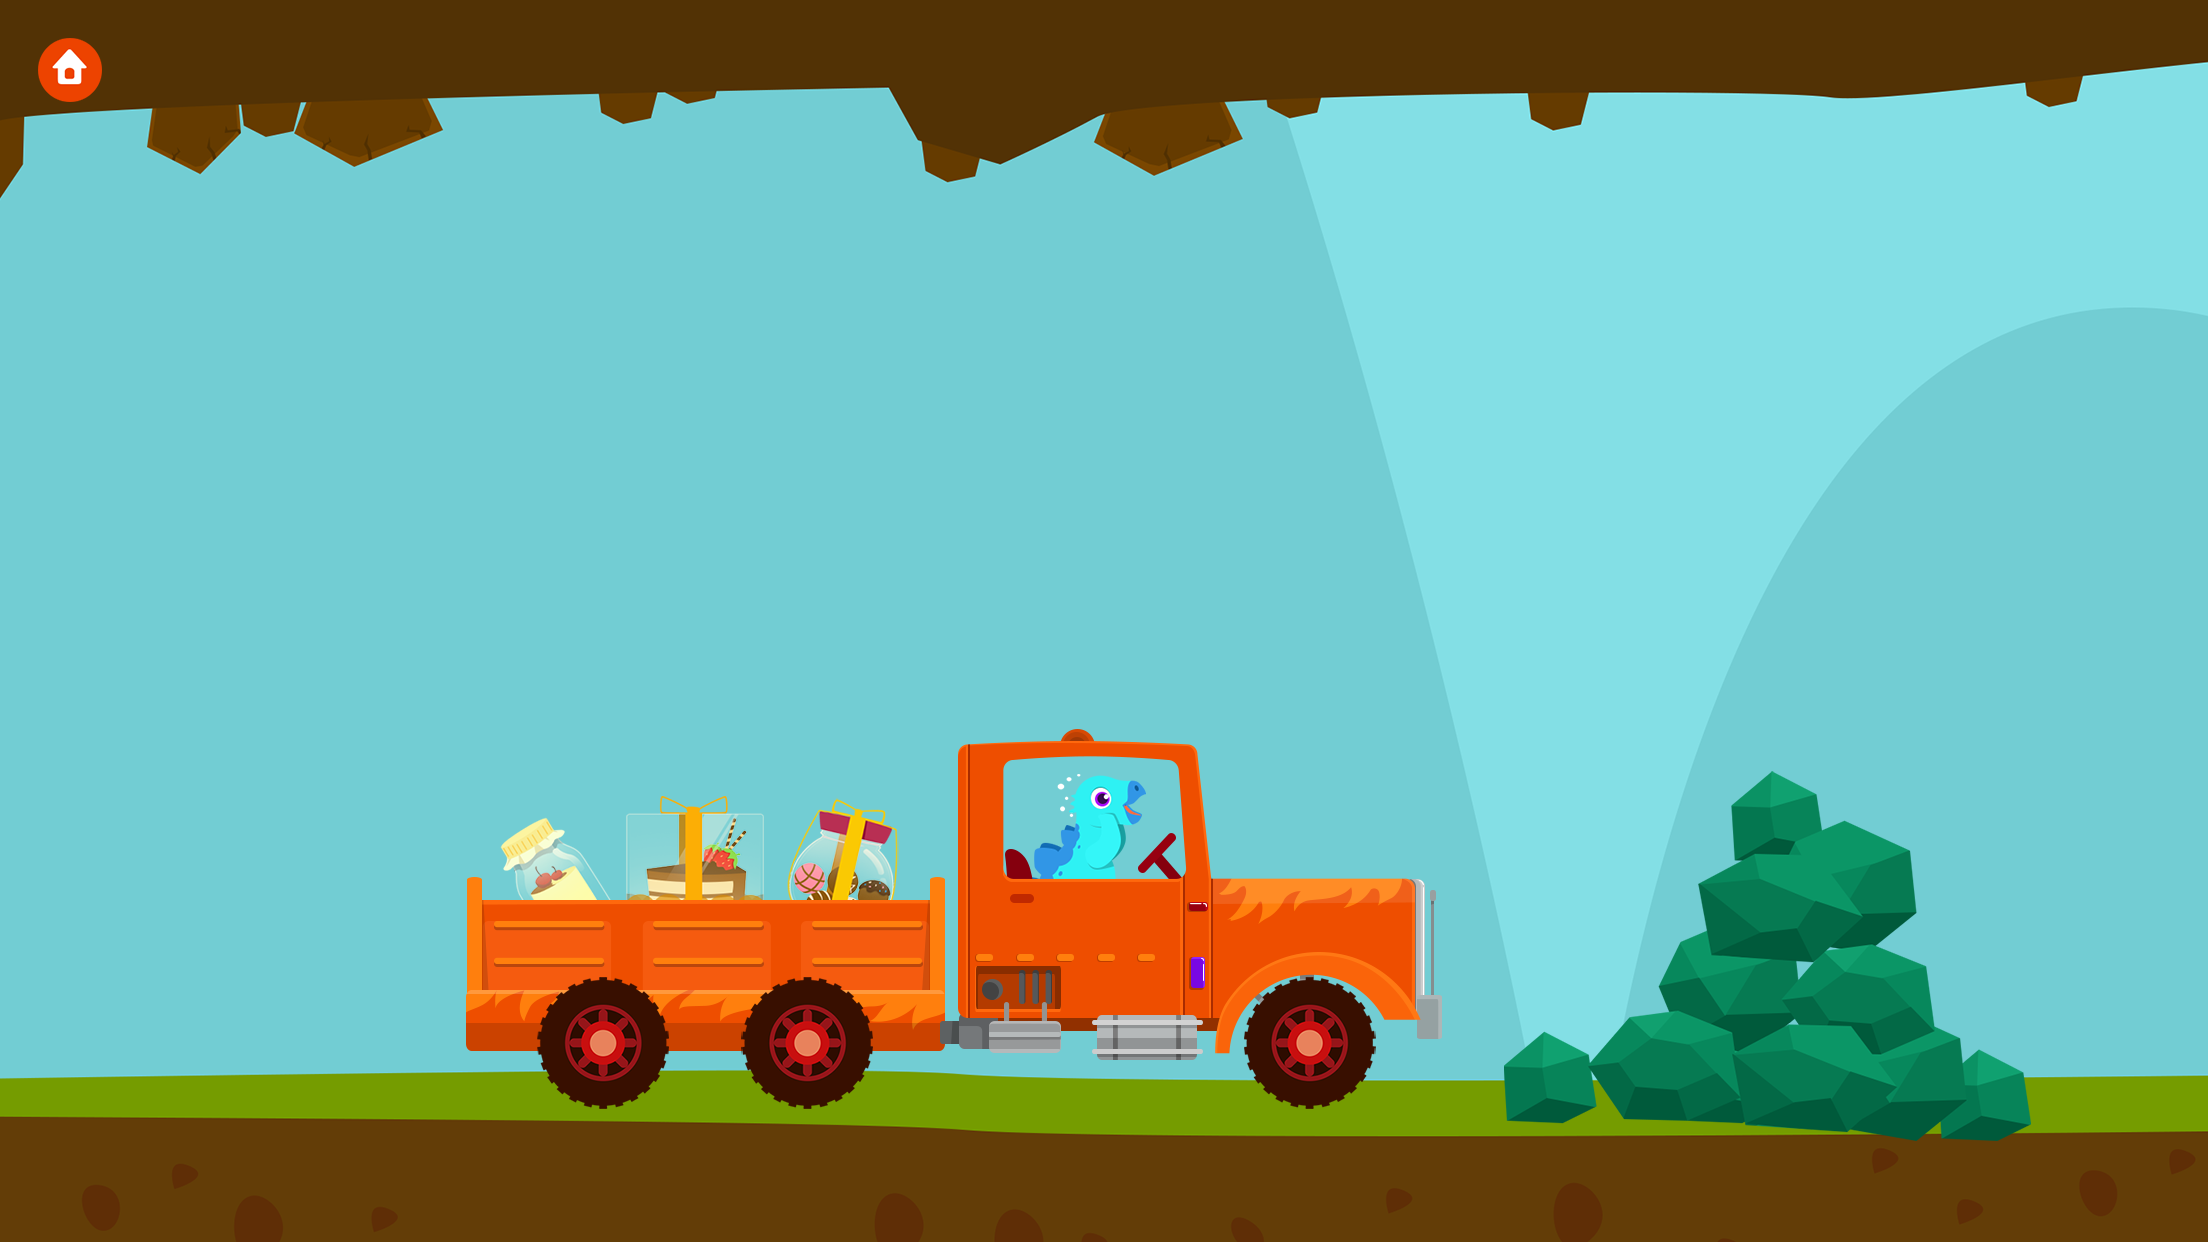 Screenshot 1 of Mga larong Dinosaur Truck para sa mga bata 1.3.3